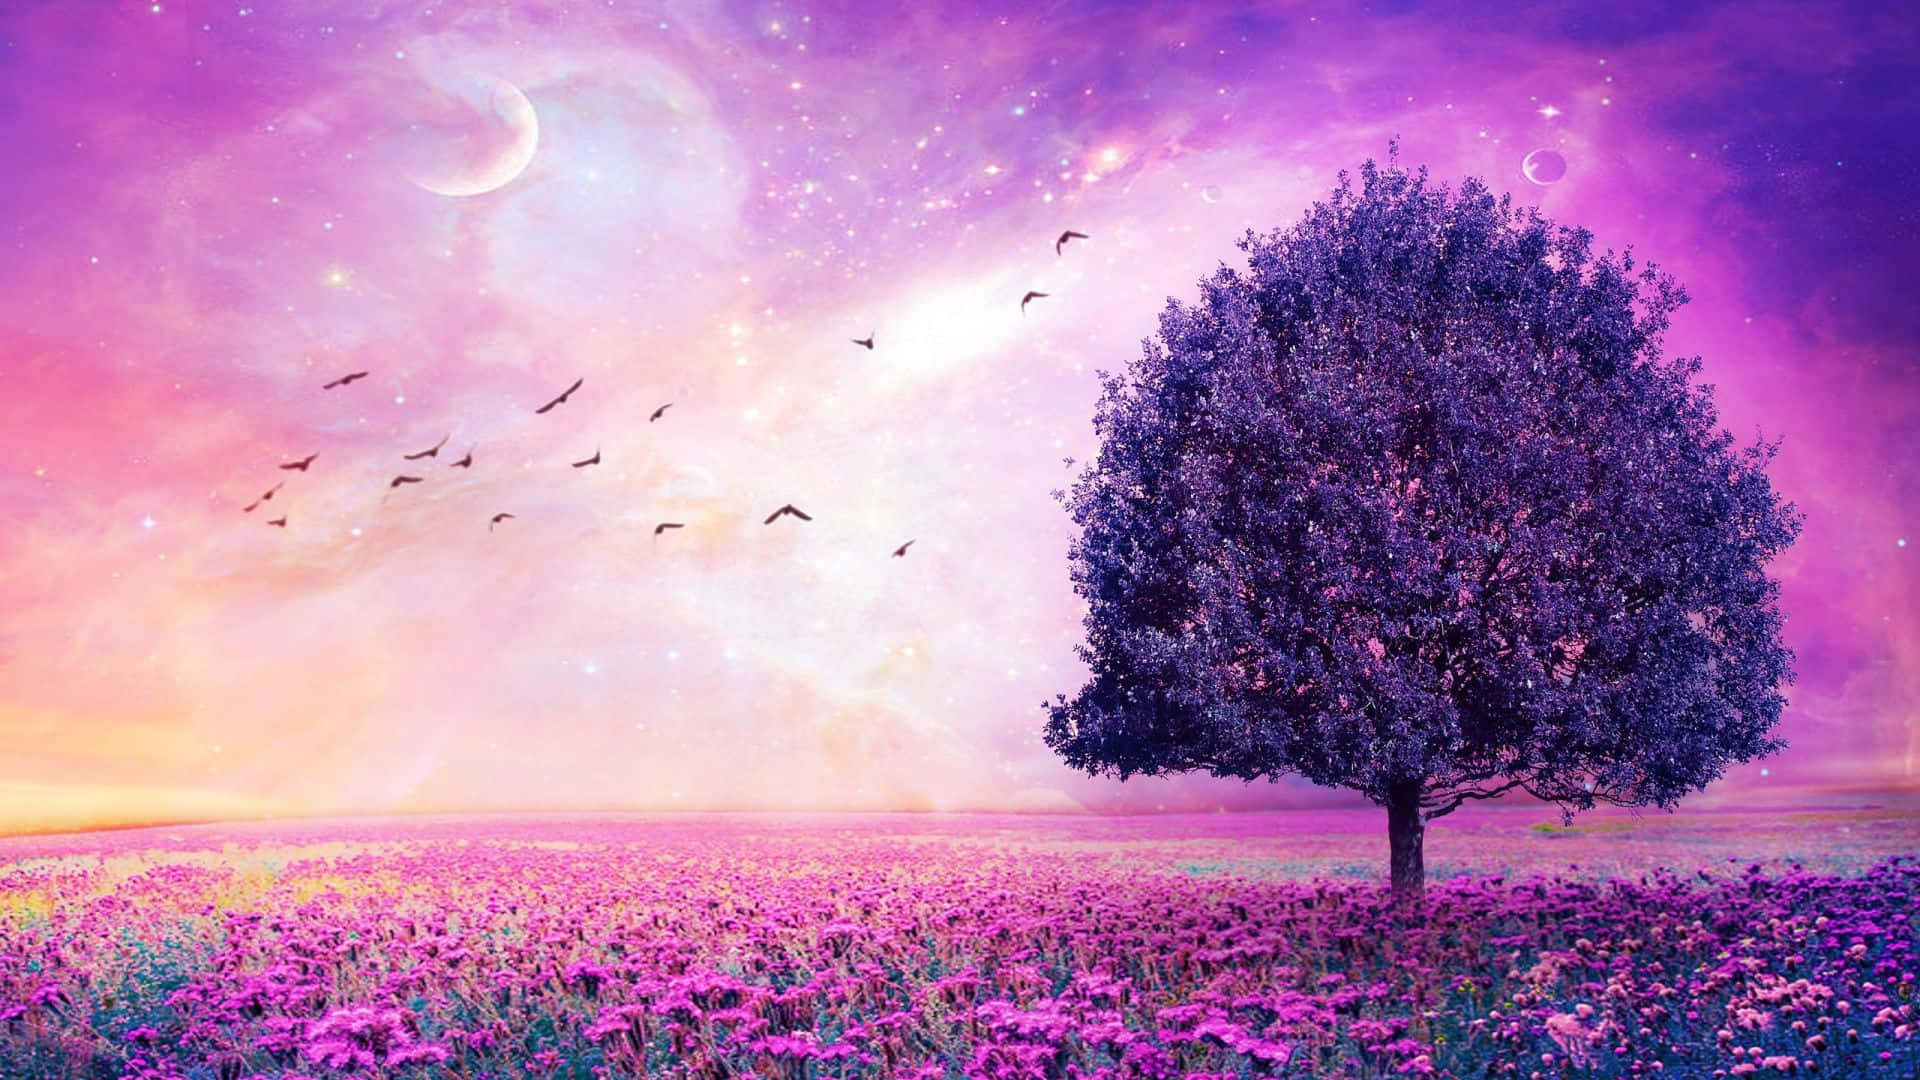 Pretty Purple Tree In A Field Of Flowers Background